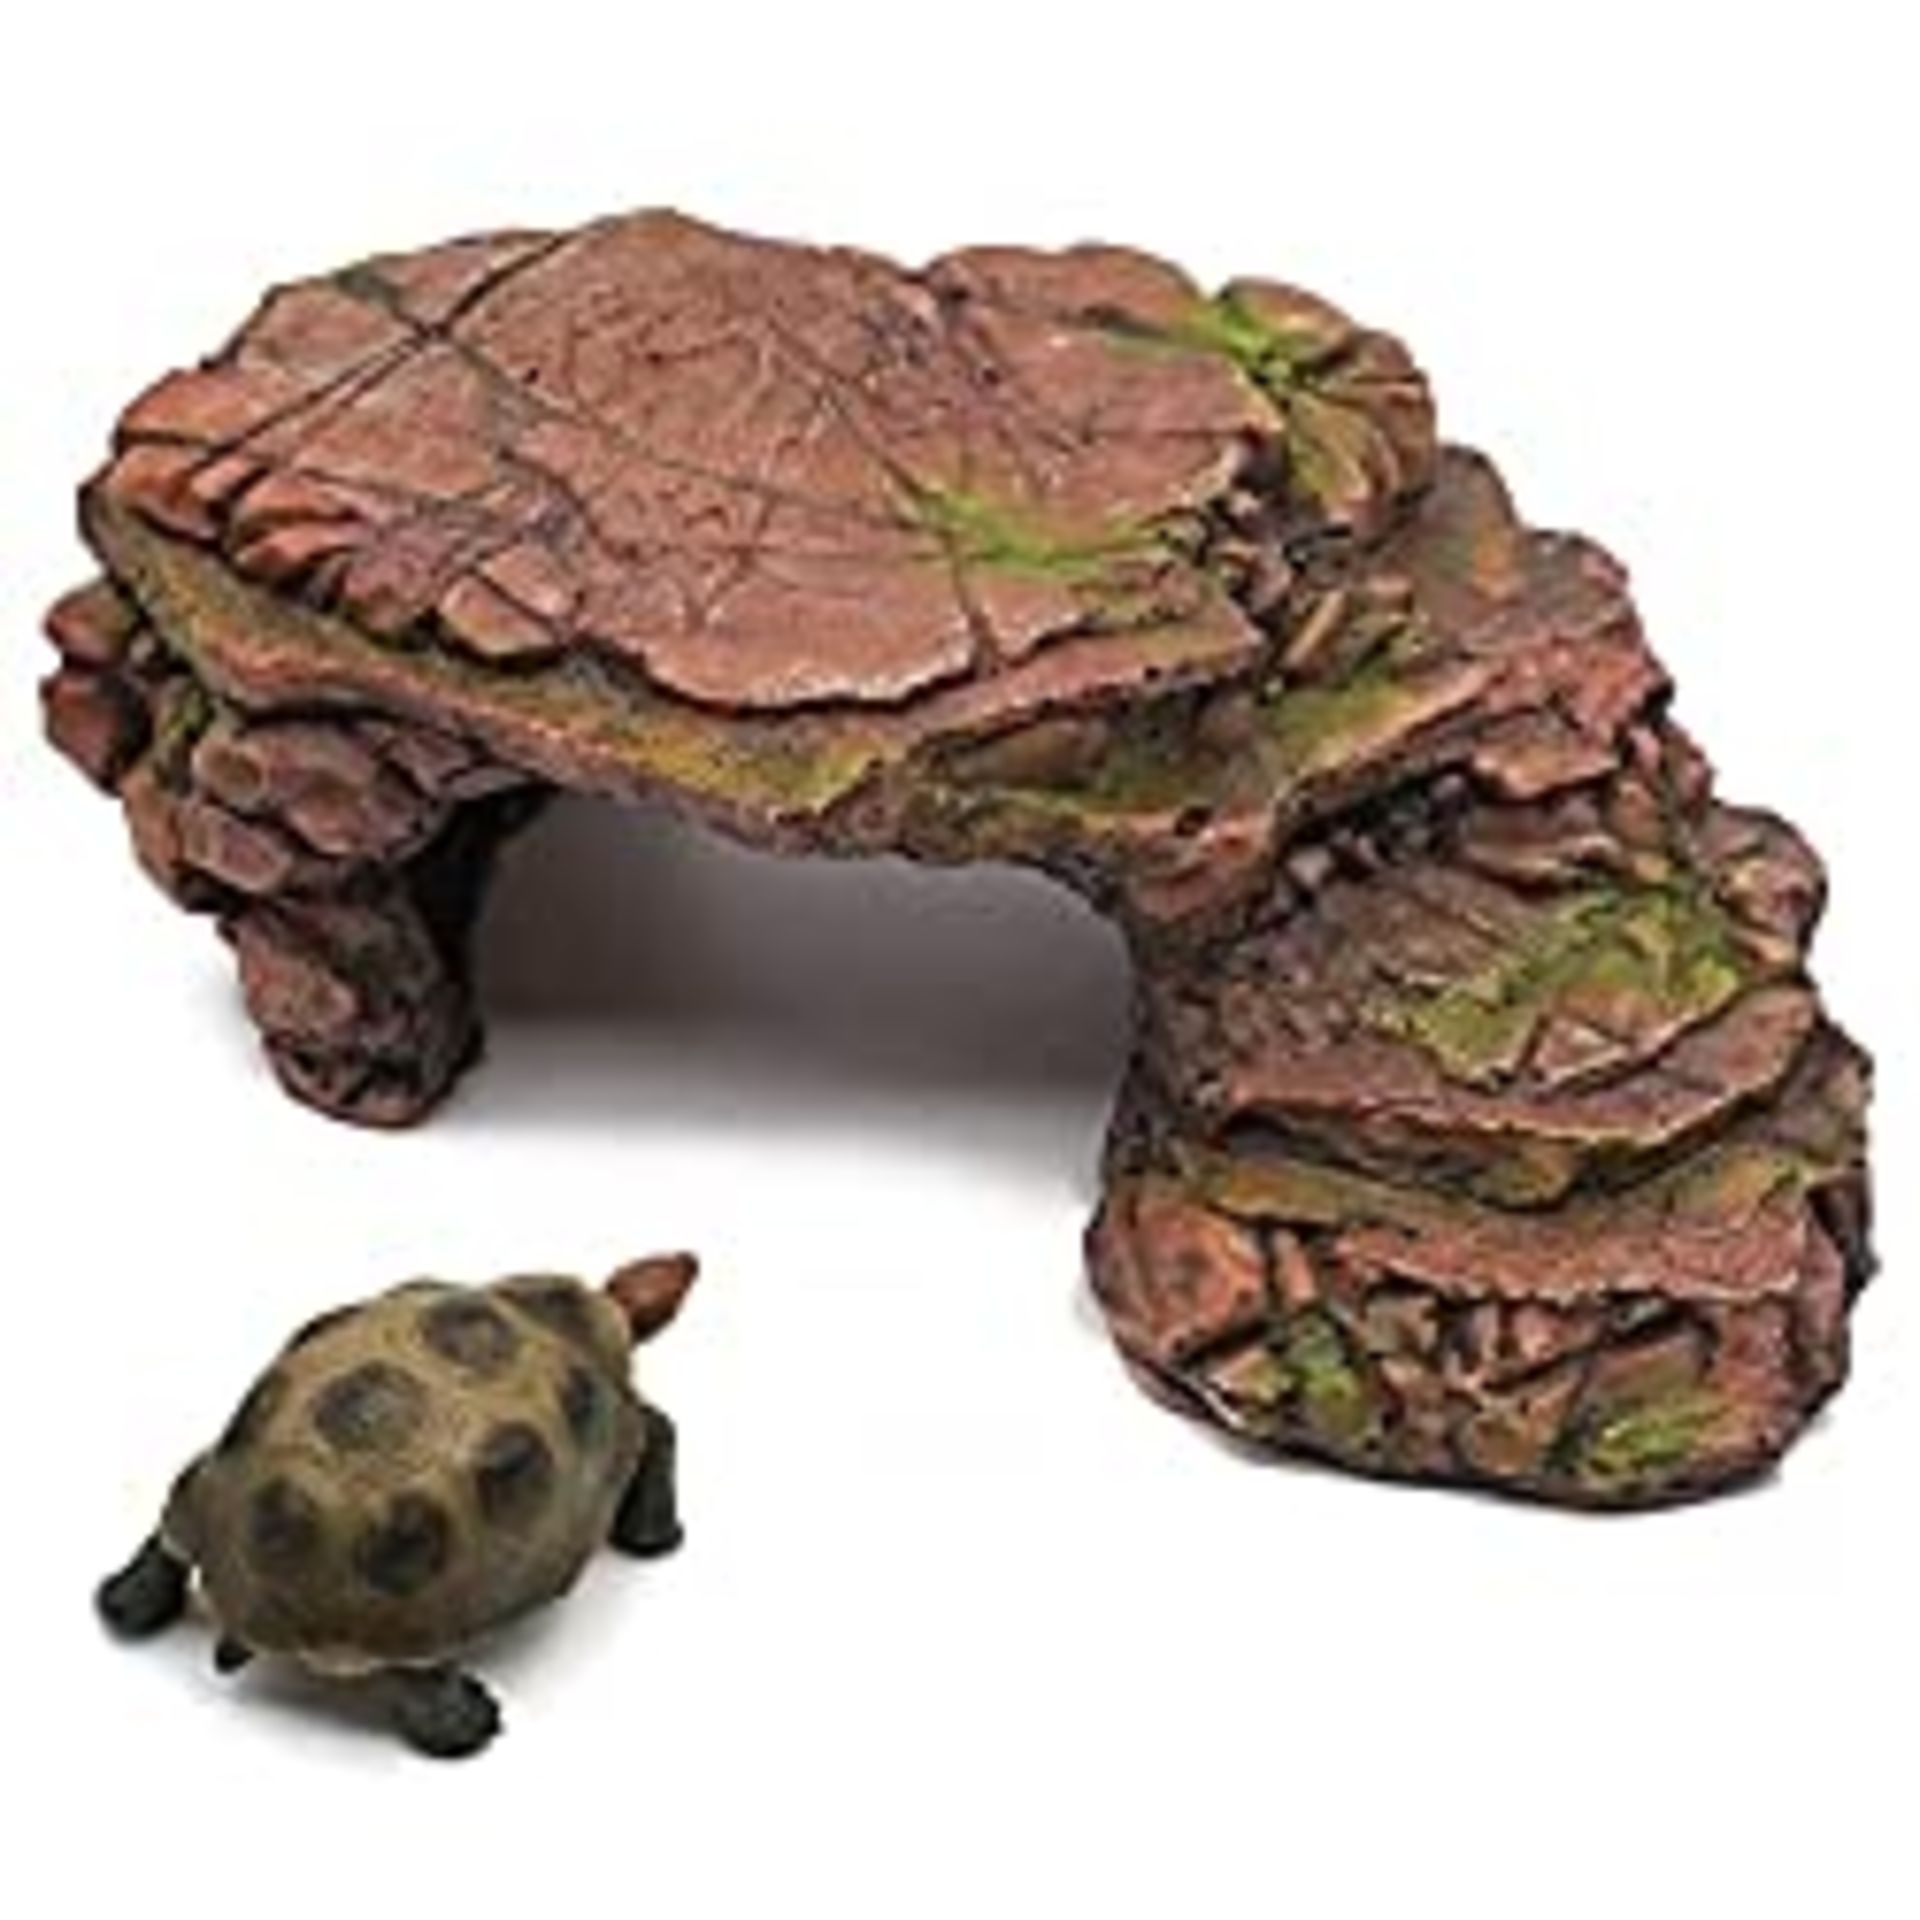 RRP £24.55 nomal Turtle Basking Platform with Rock Ladder Reptile